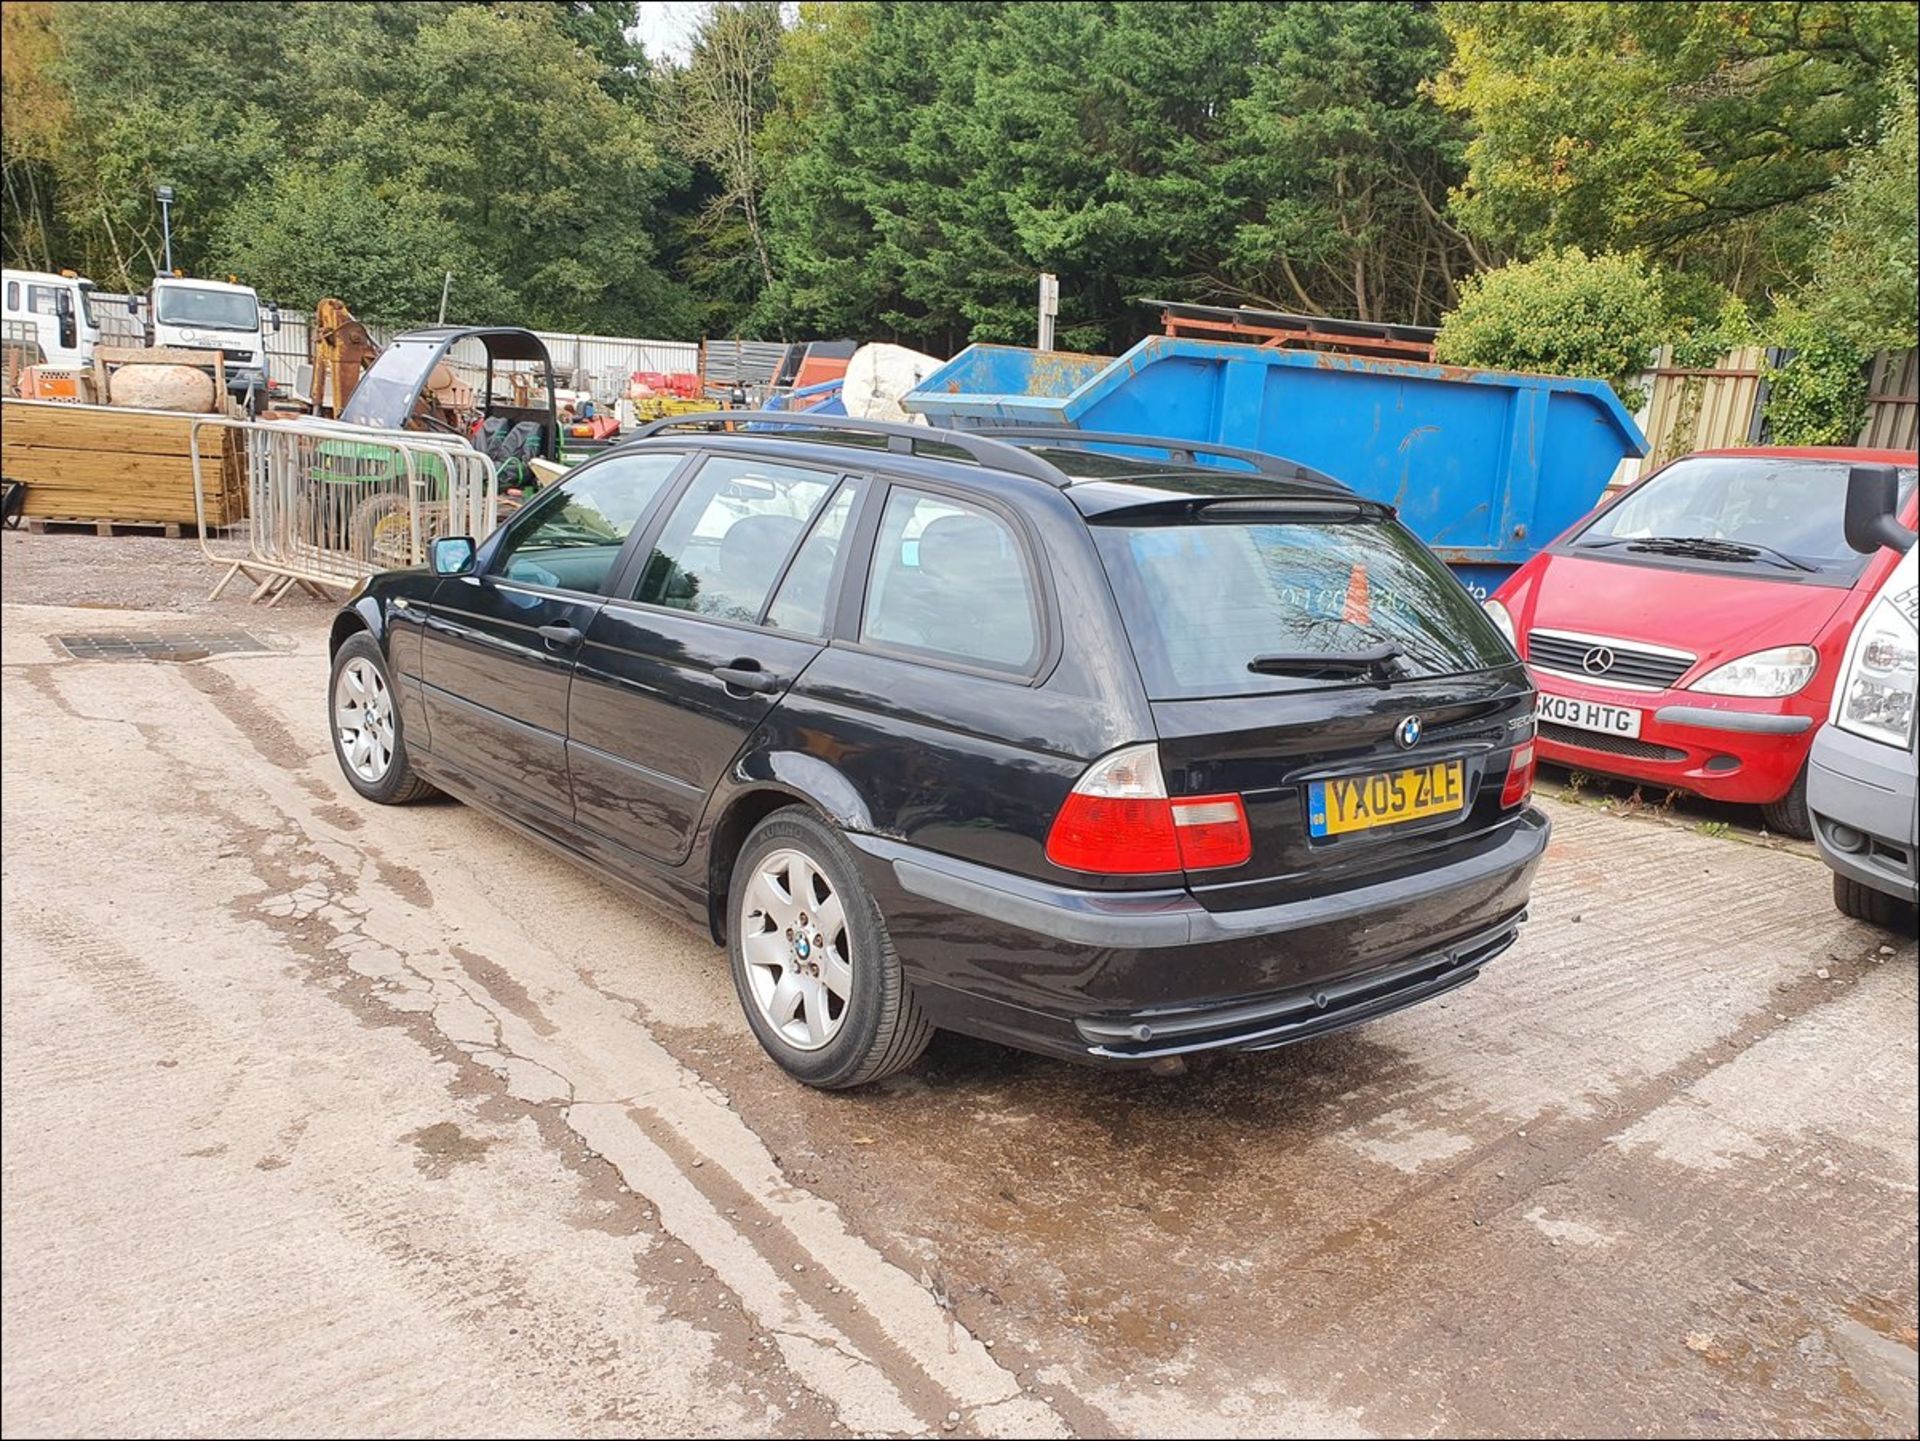 05/05 BMW 320 D SE TOURING - 1995cc 5dr Estate (Black, 200k) - Image 12 of 13